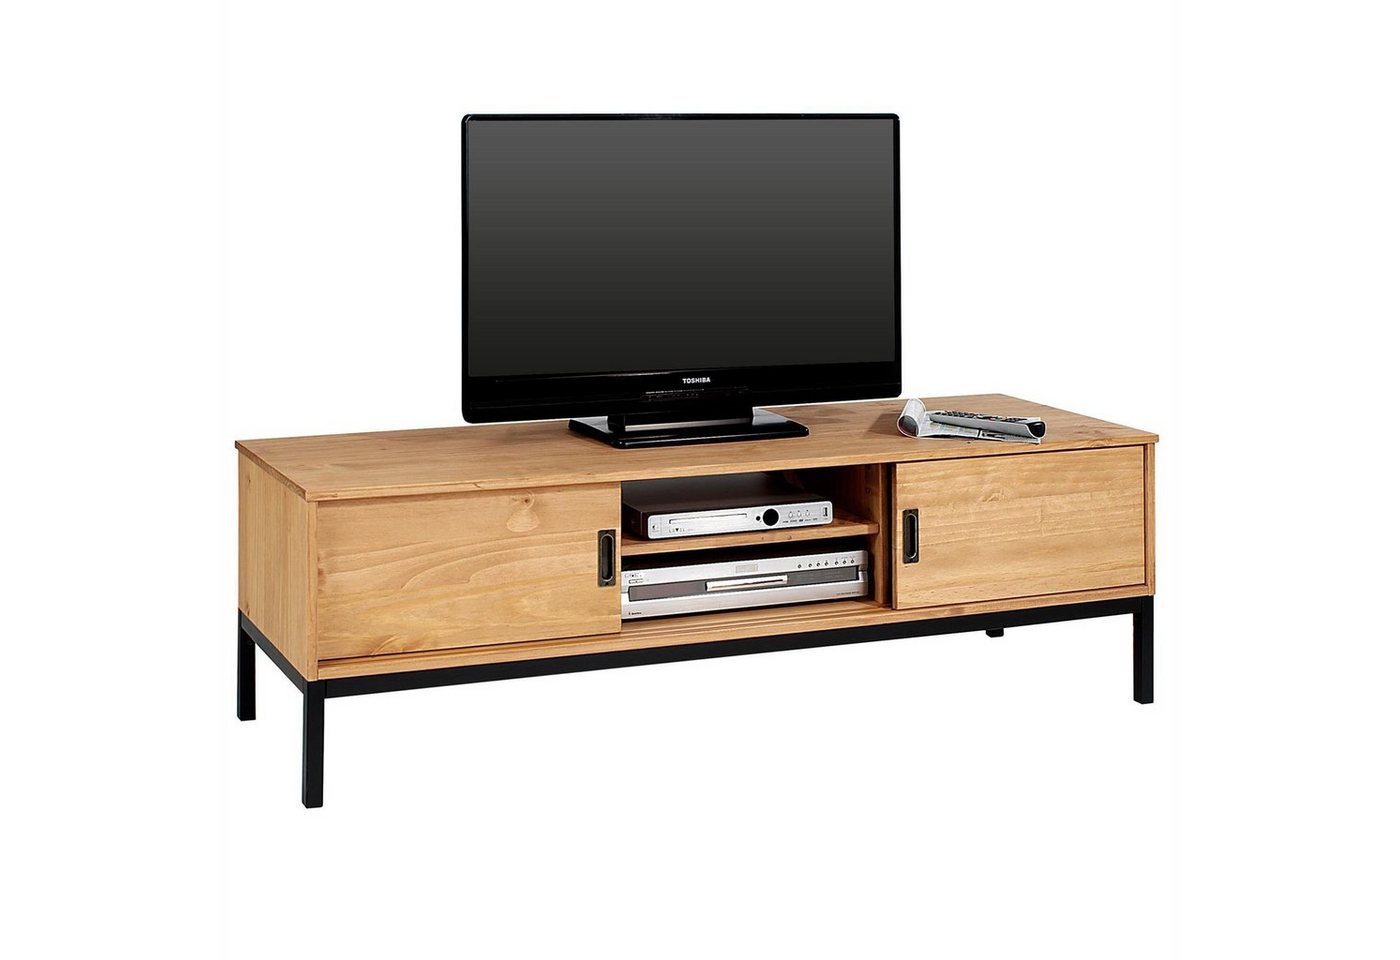 IDIMEX Lowboard SELMA, Lowboard TV Möbel Tisch Schrank Fernsehtisch Industrial Designl gebeiz von IDIMEX